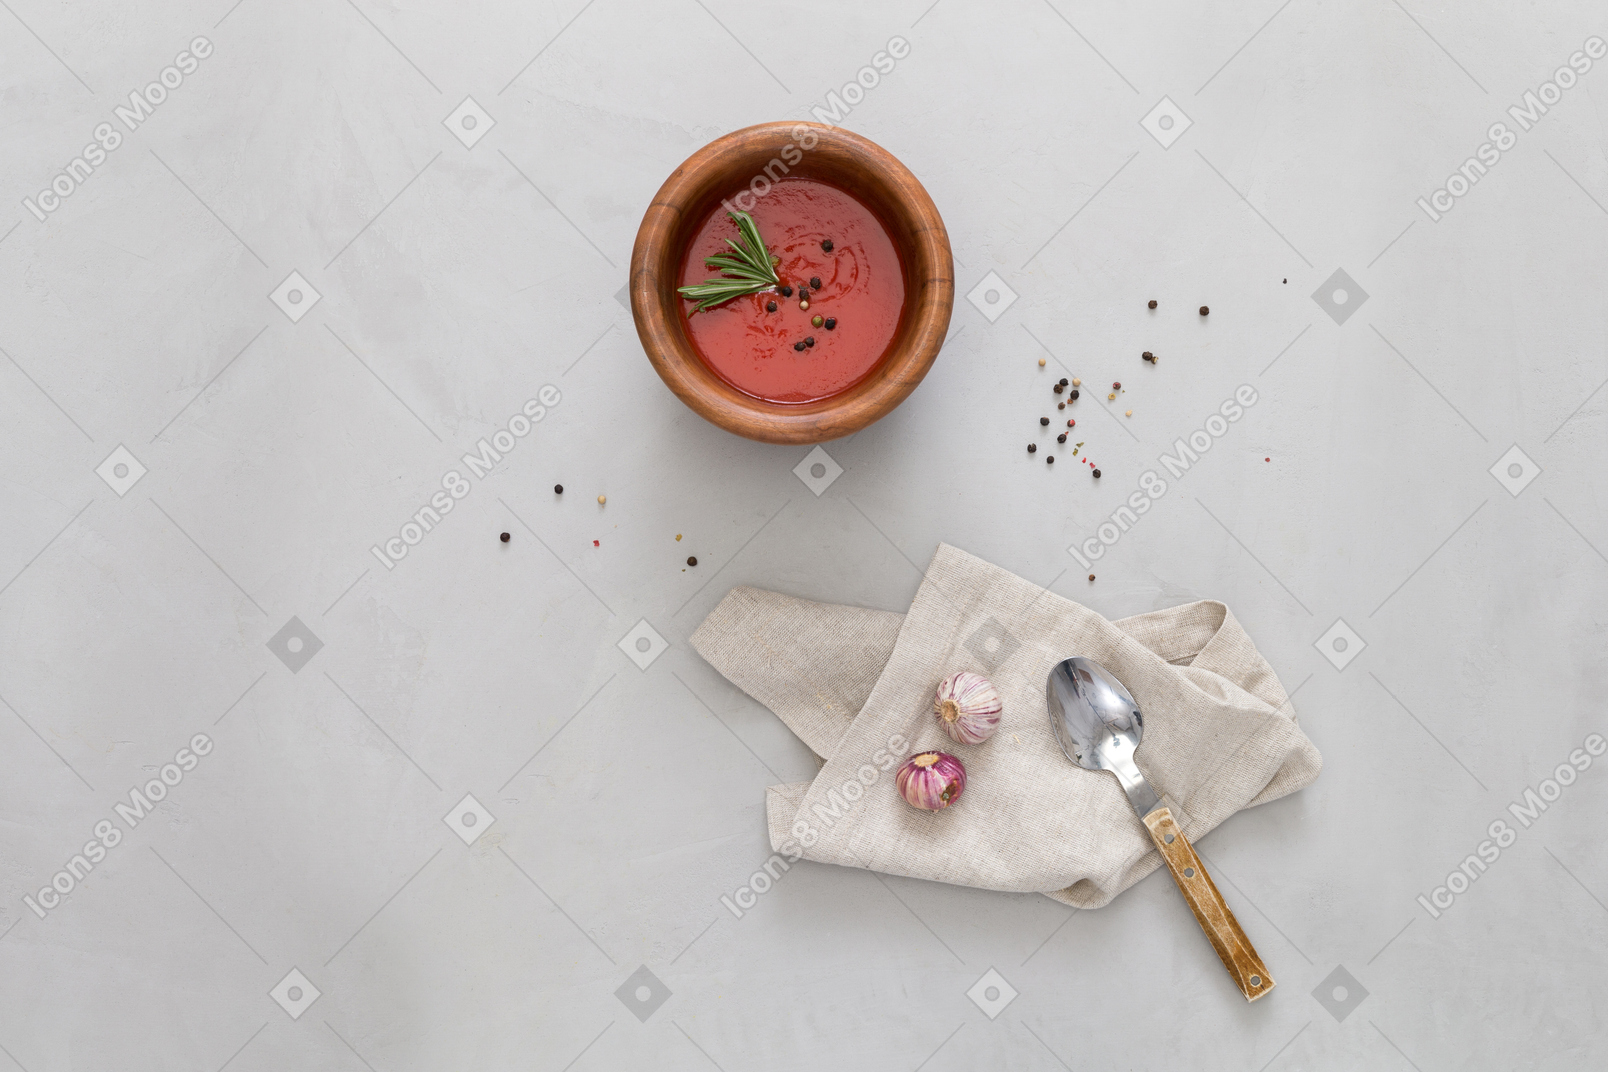 Eine schüssel gazpacho, etwas knoblauch und einen löffel